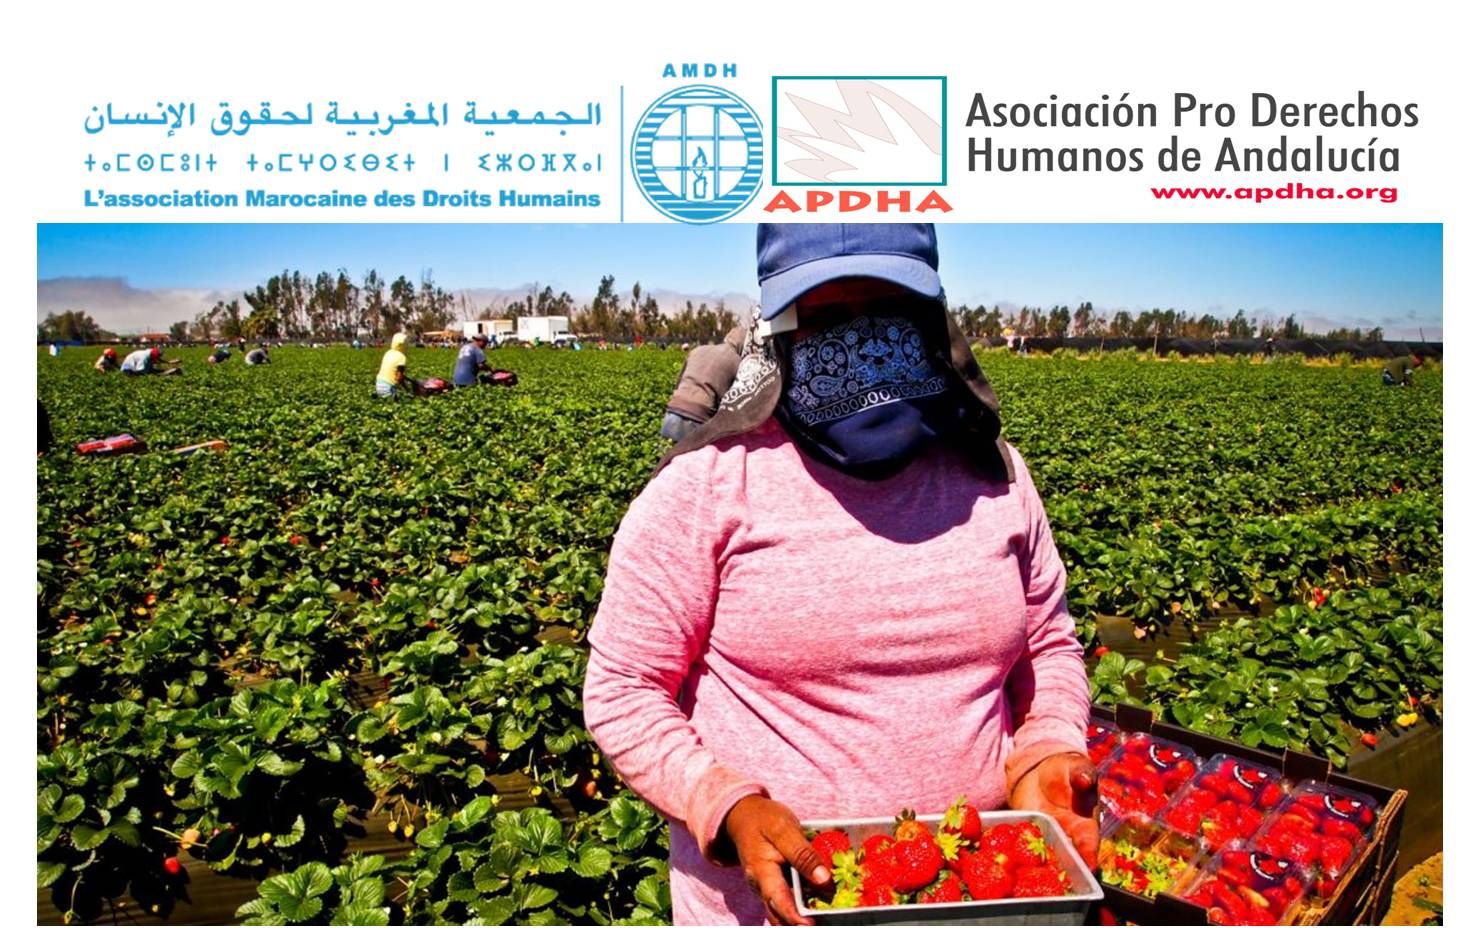 Carta abierta sobre la situación de los trabajadores agrícolas temporales en los campos españoles.